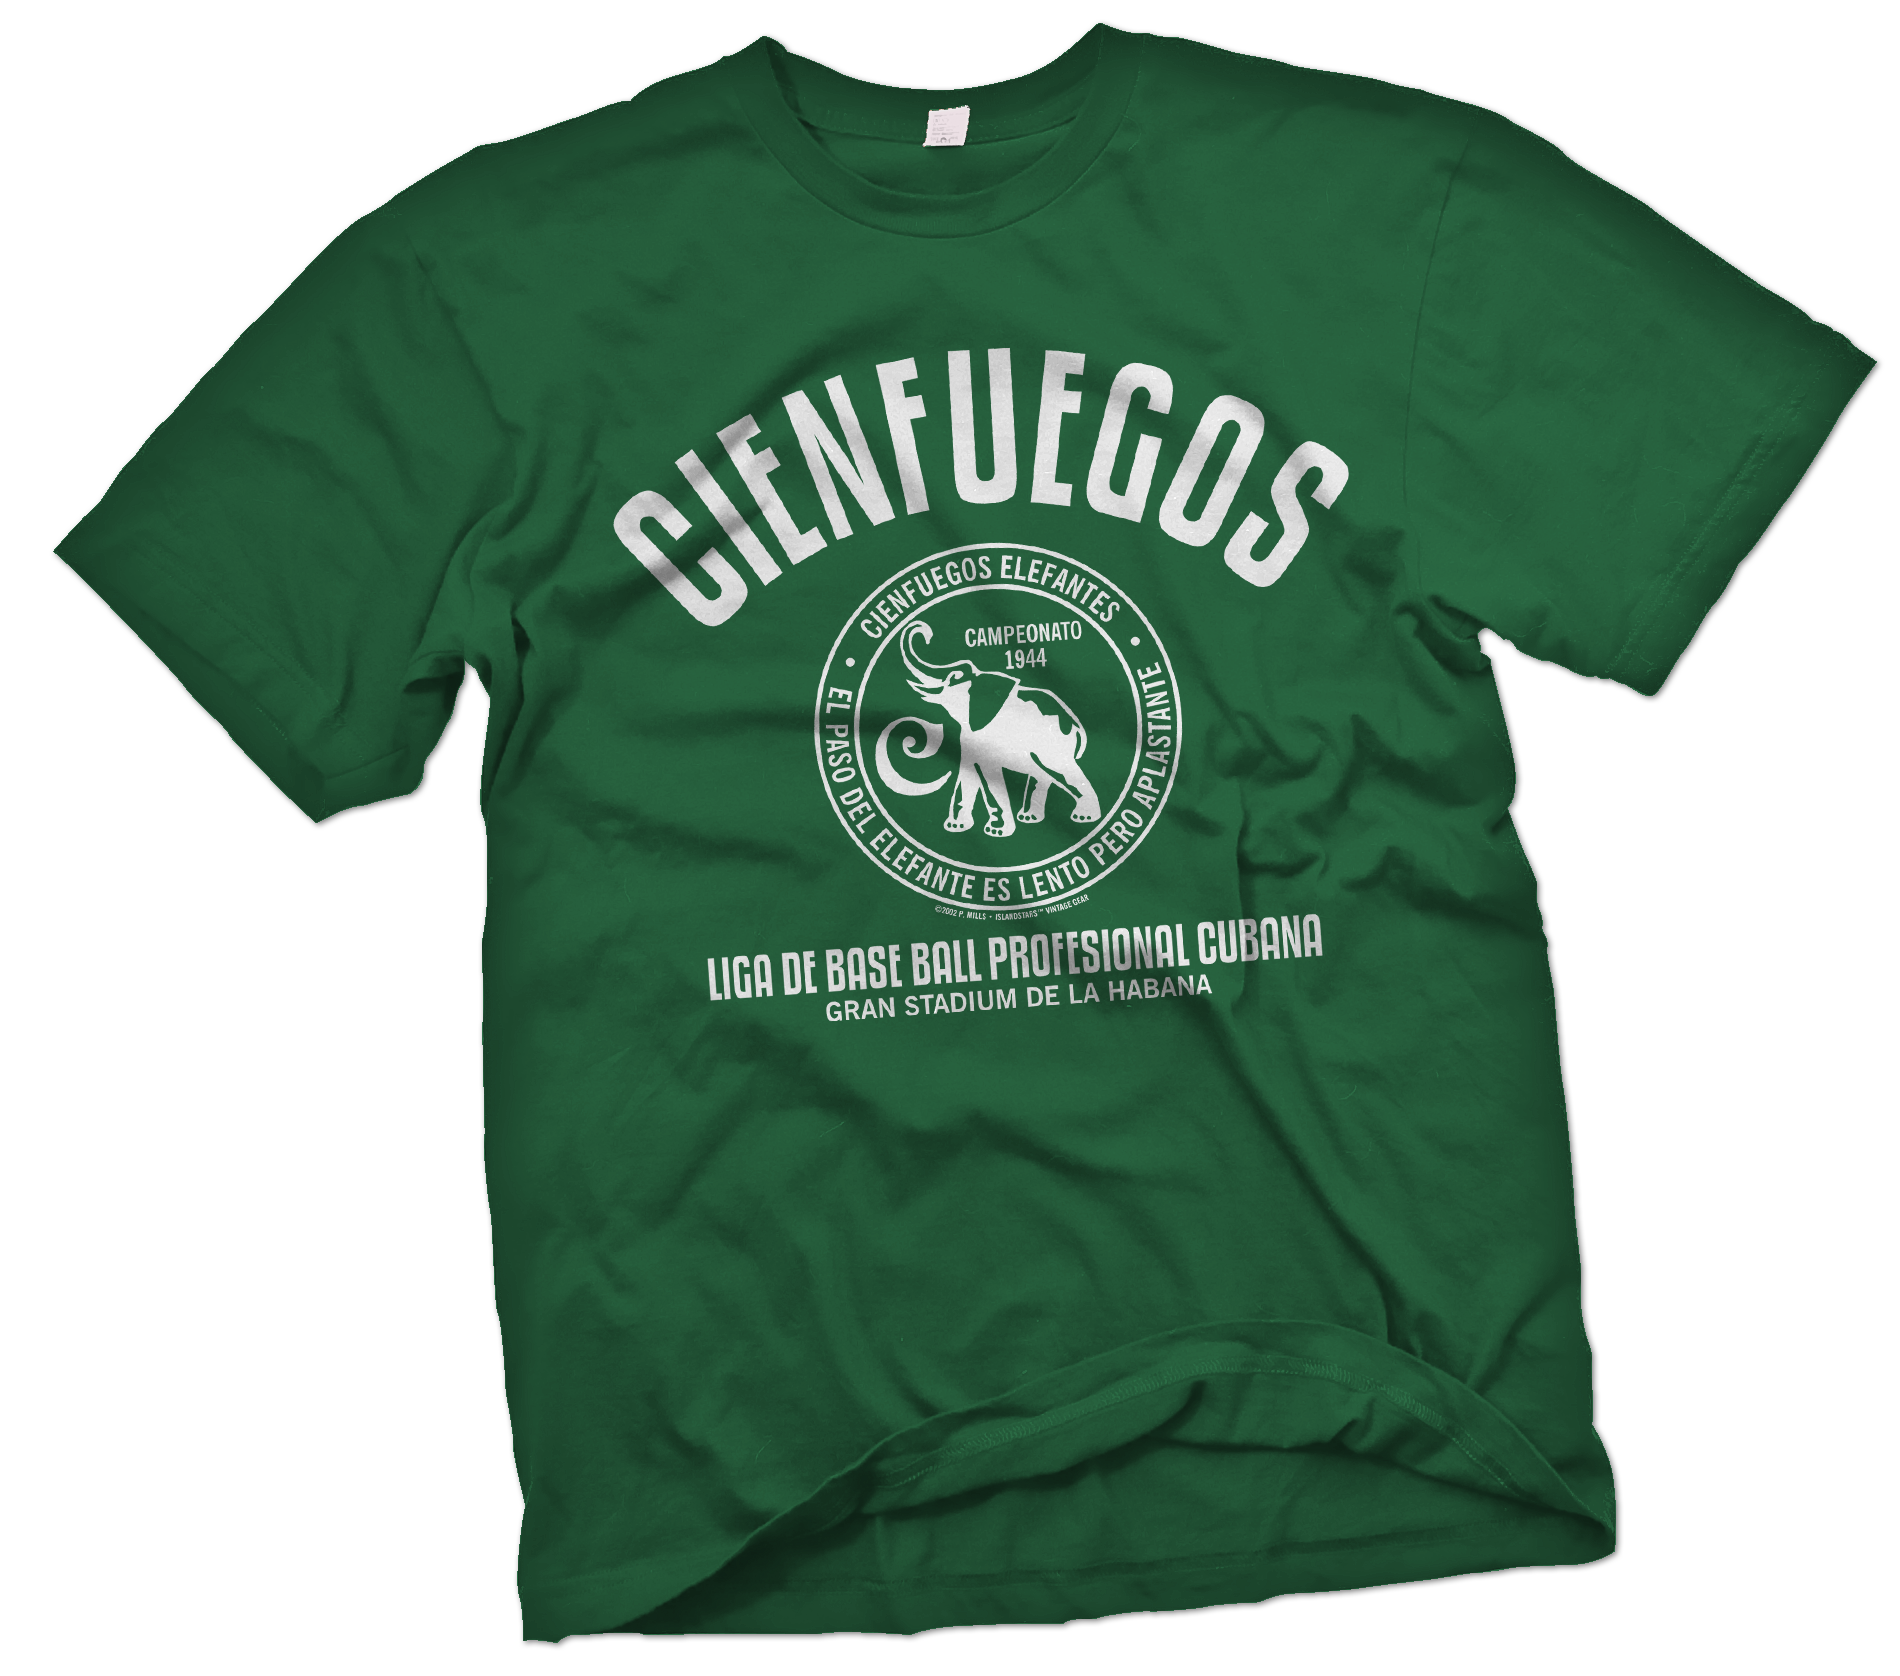 wonder-print-shop-t-shirt-cienfuegos-elefantes-grandstand-t-shirt